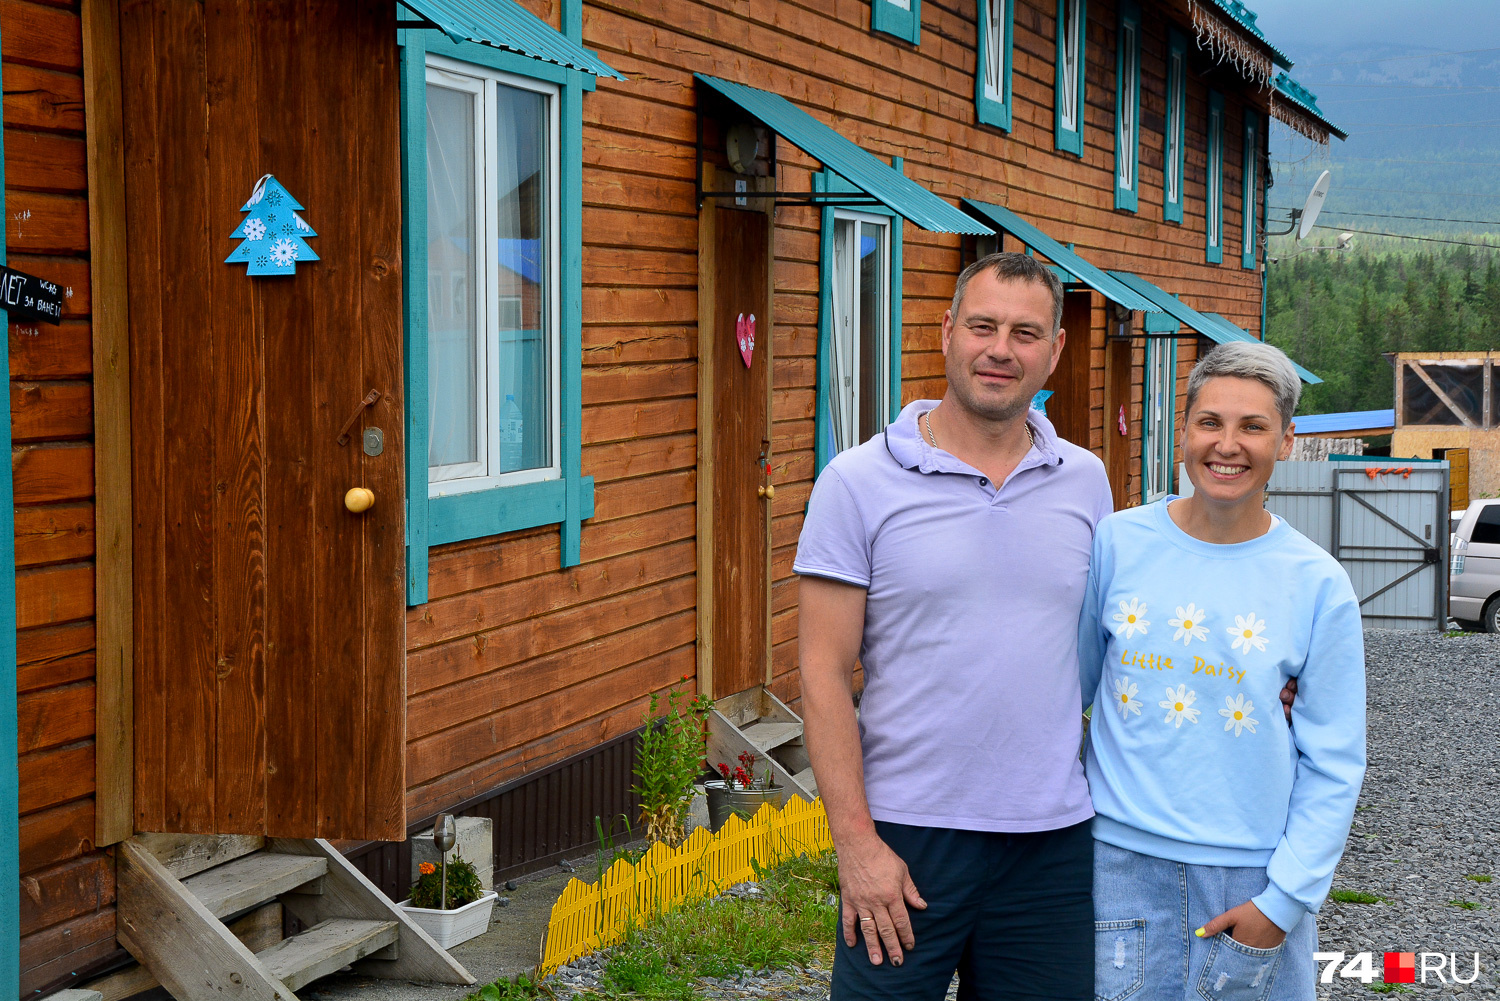 Сергей и Ольга держат гостевой дом в Зюраткуле, променяв городскую жизнь на этакую «дичь»